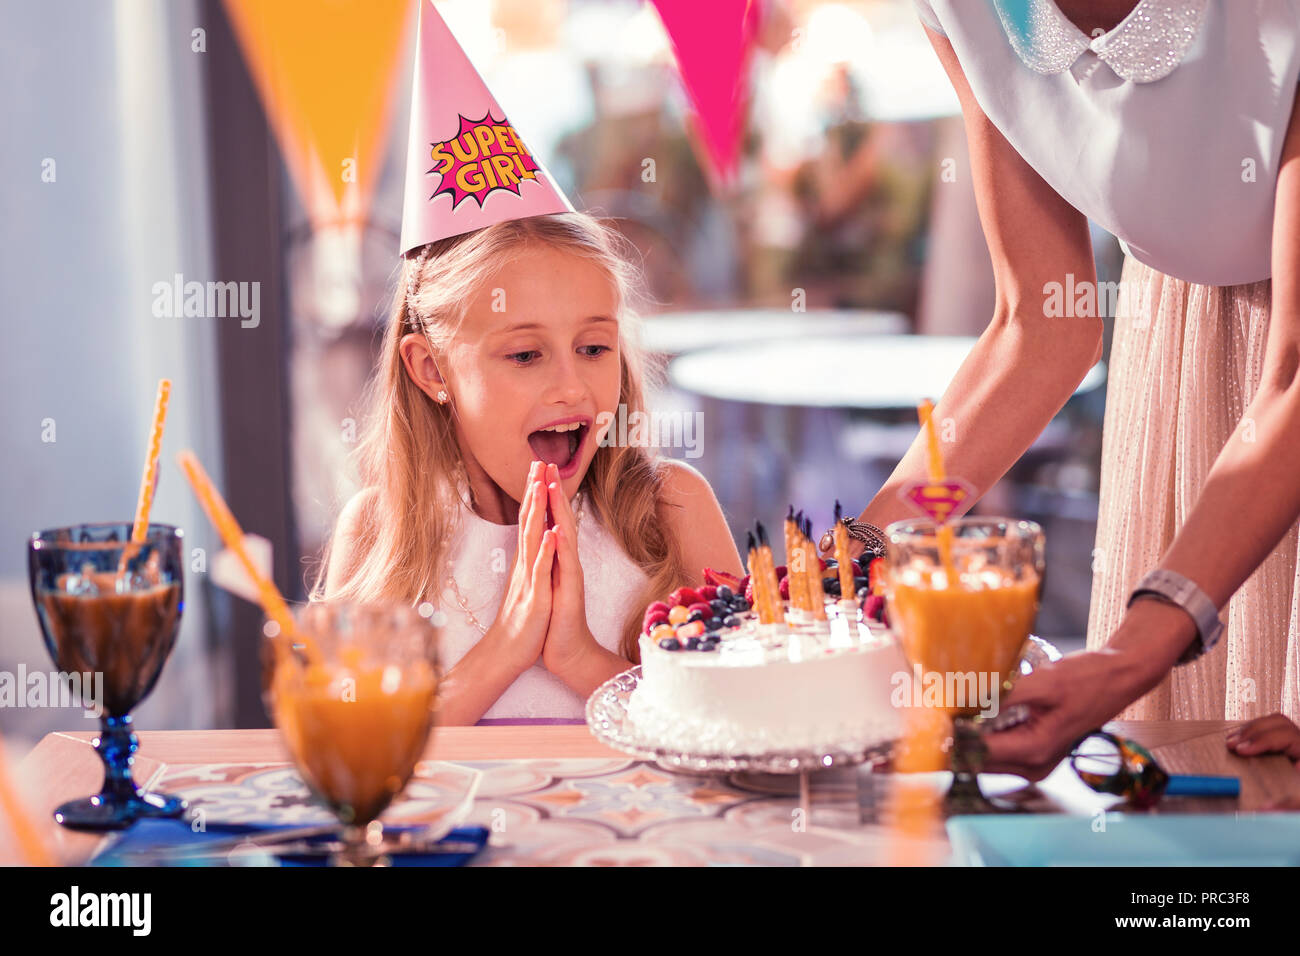 Impressionné girl frappant des mains tout en regardant le beau gâteau Banque D'Images